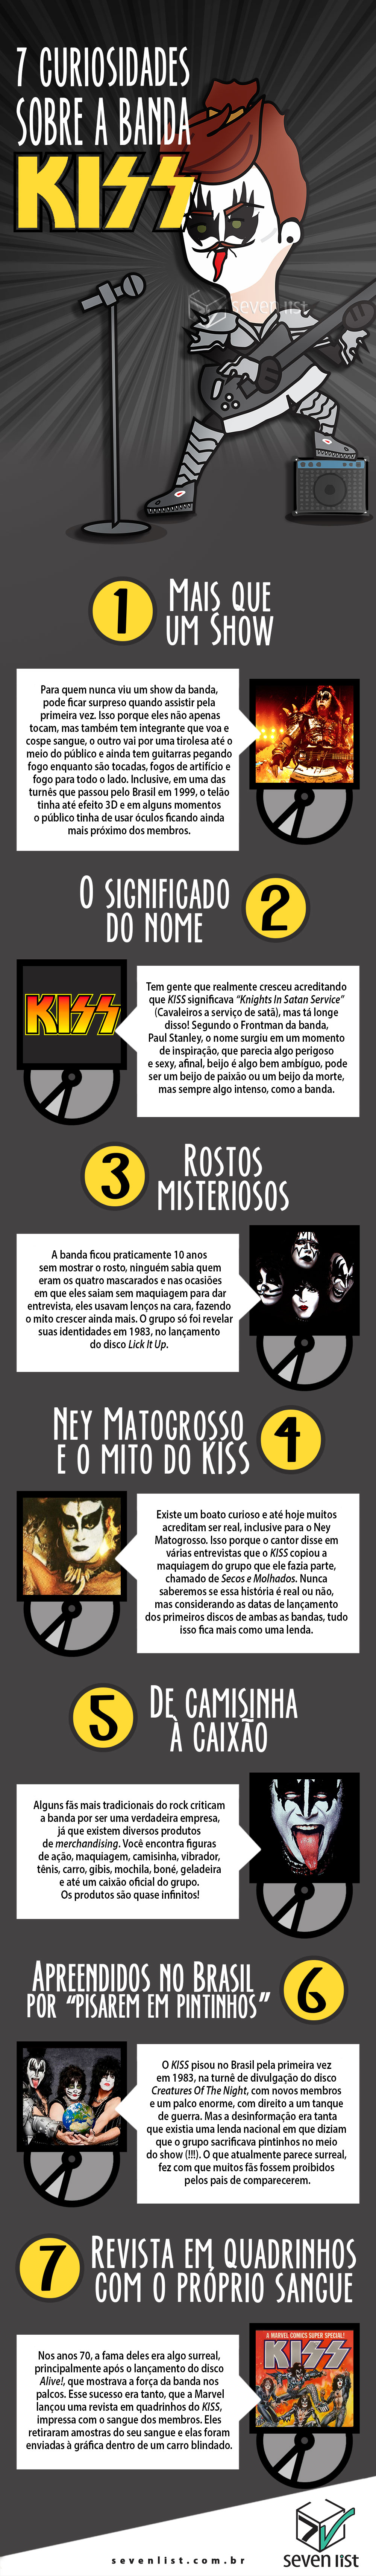 7 CURIOSIDADES SOBRE A BANDA KISS - SEVEN LIST